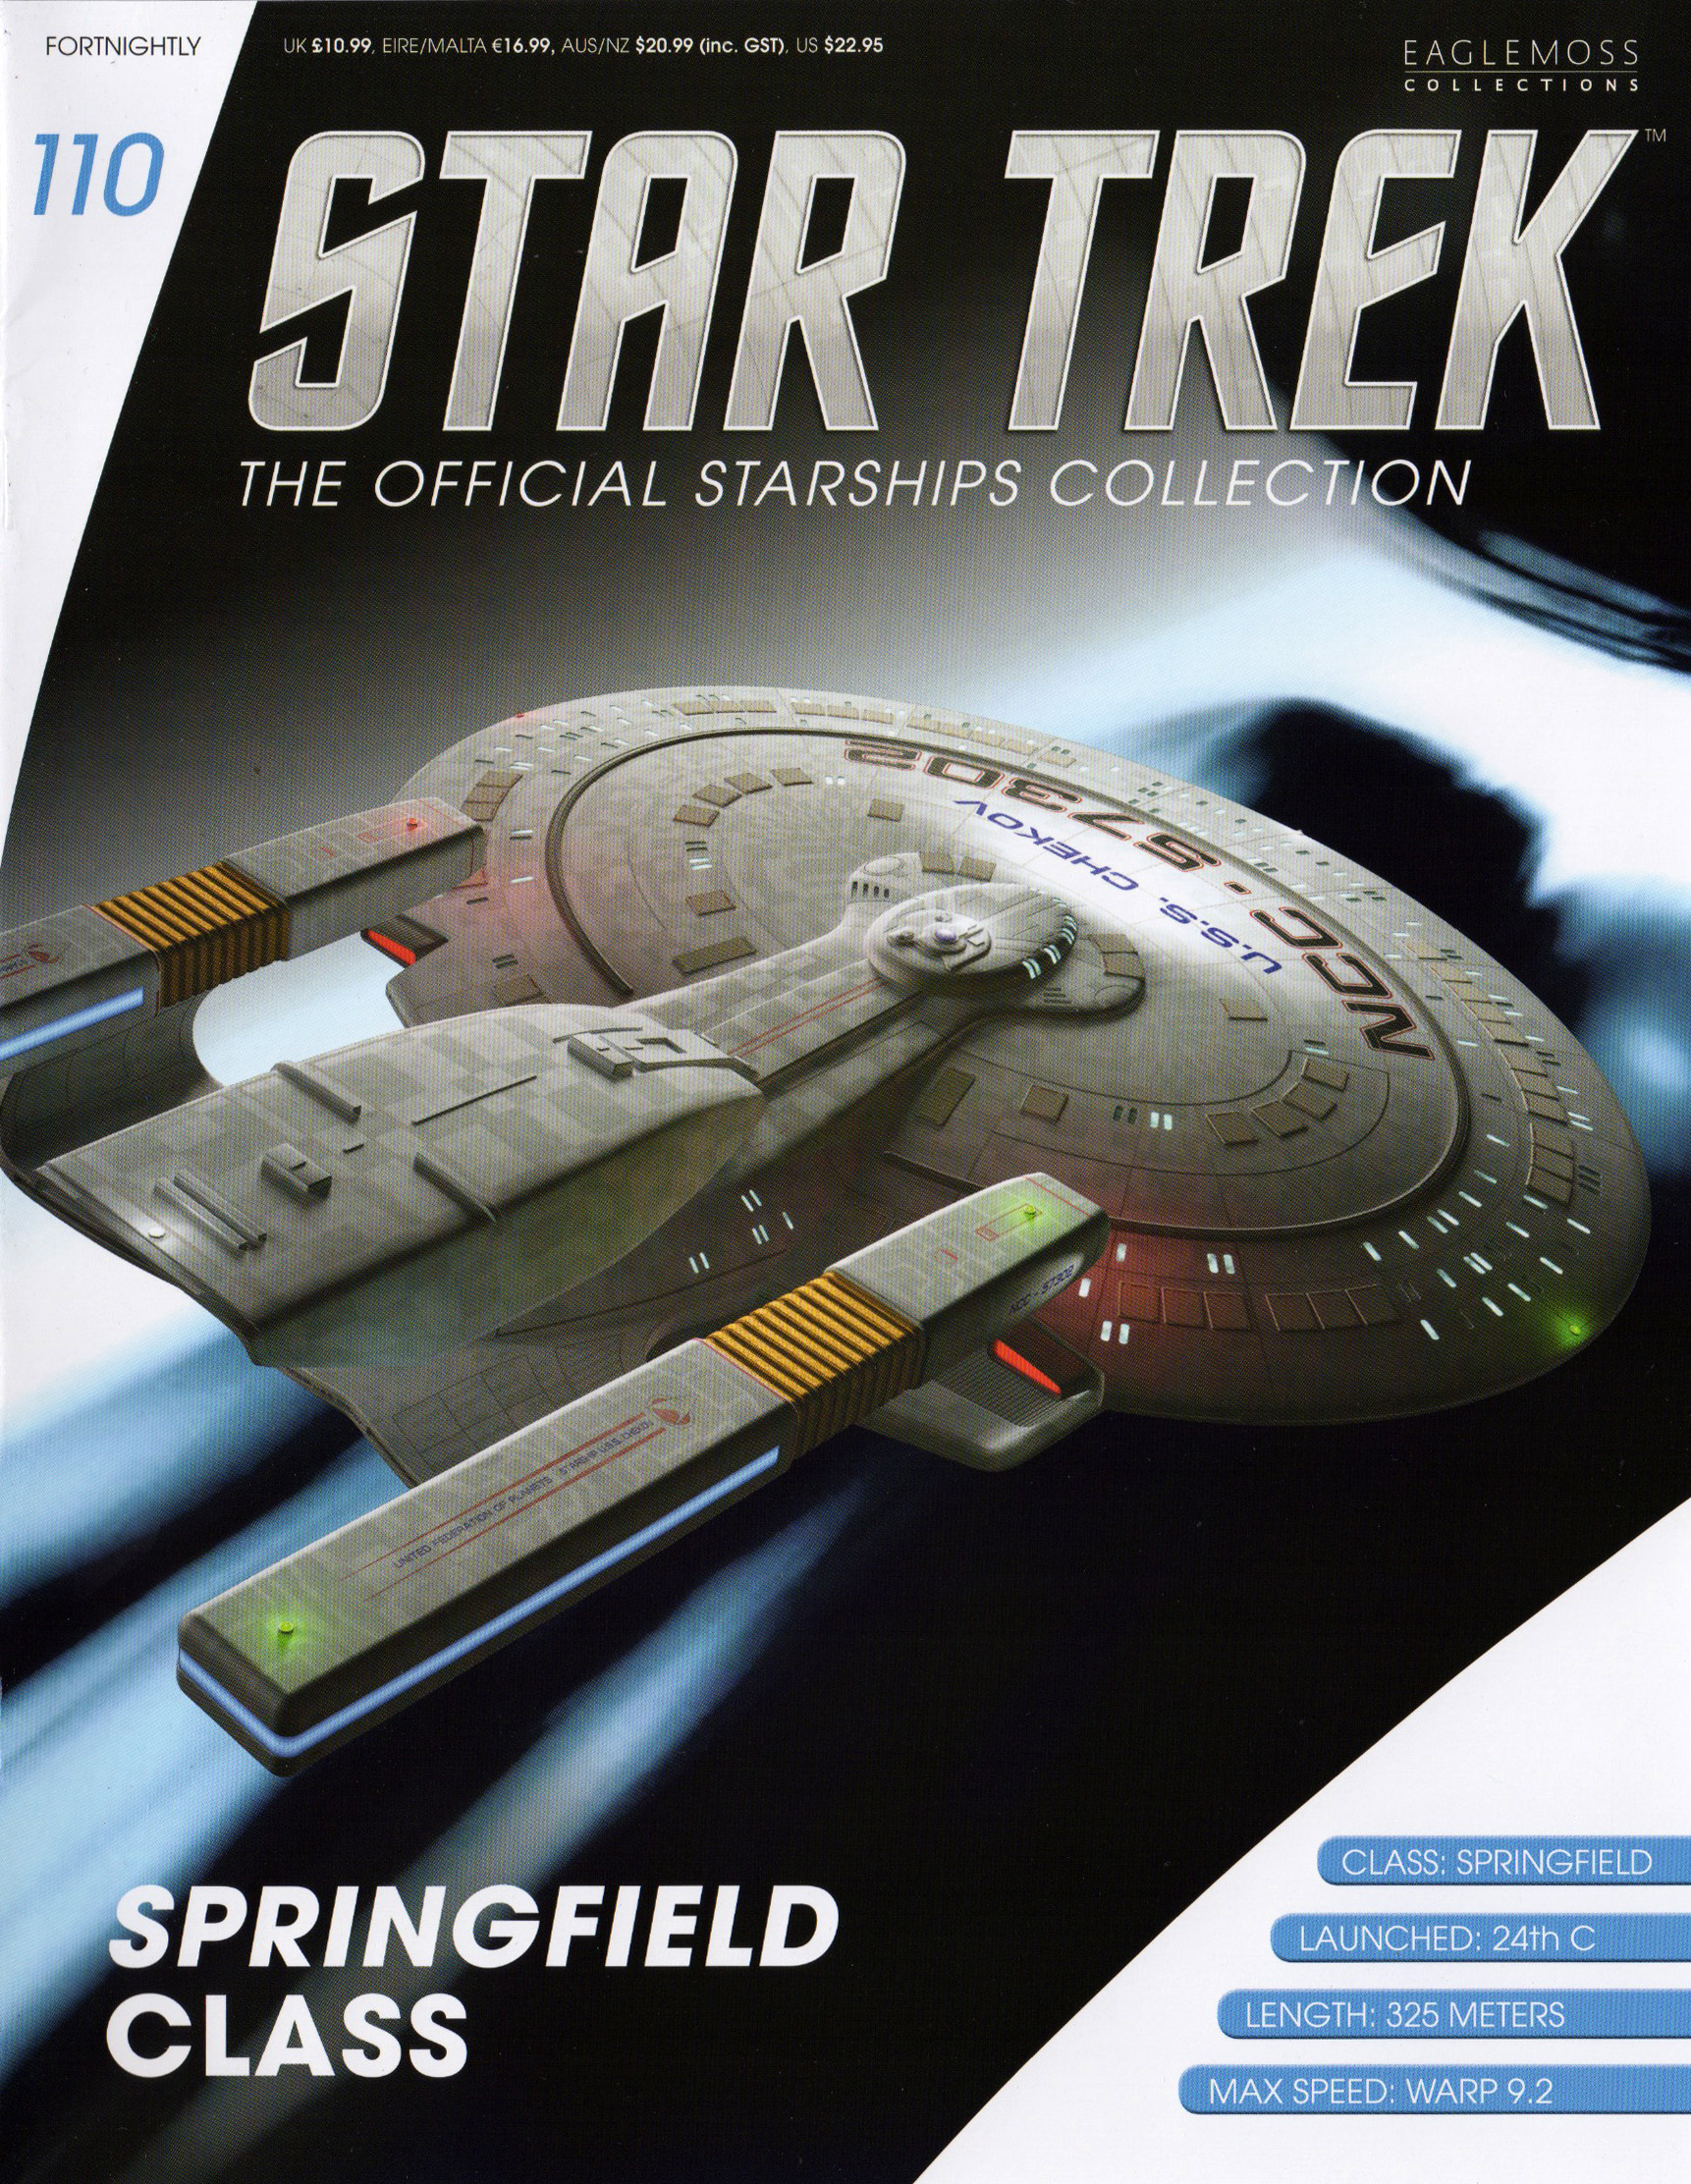 Eaglemoss Star Trek Starships Issue 110